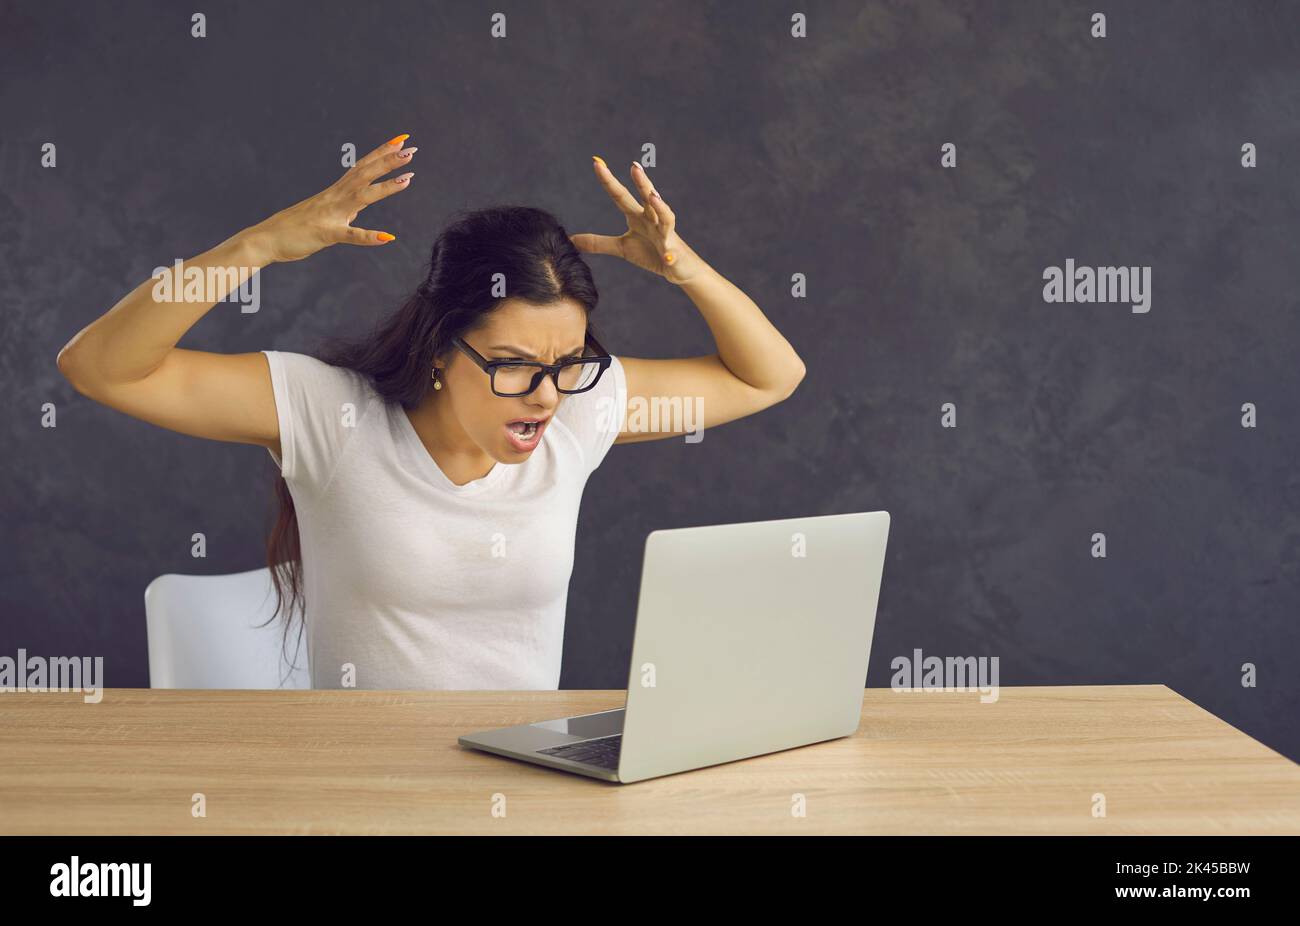 Une femme en colère et frustrée se sent stressée et hurle furieusement lorsqu'elle est assise devant un ordinateur portable. Banque D'Images